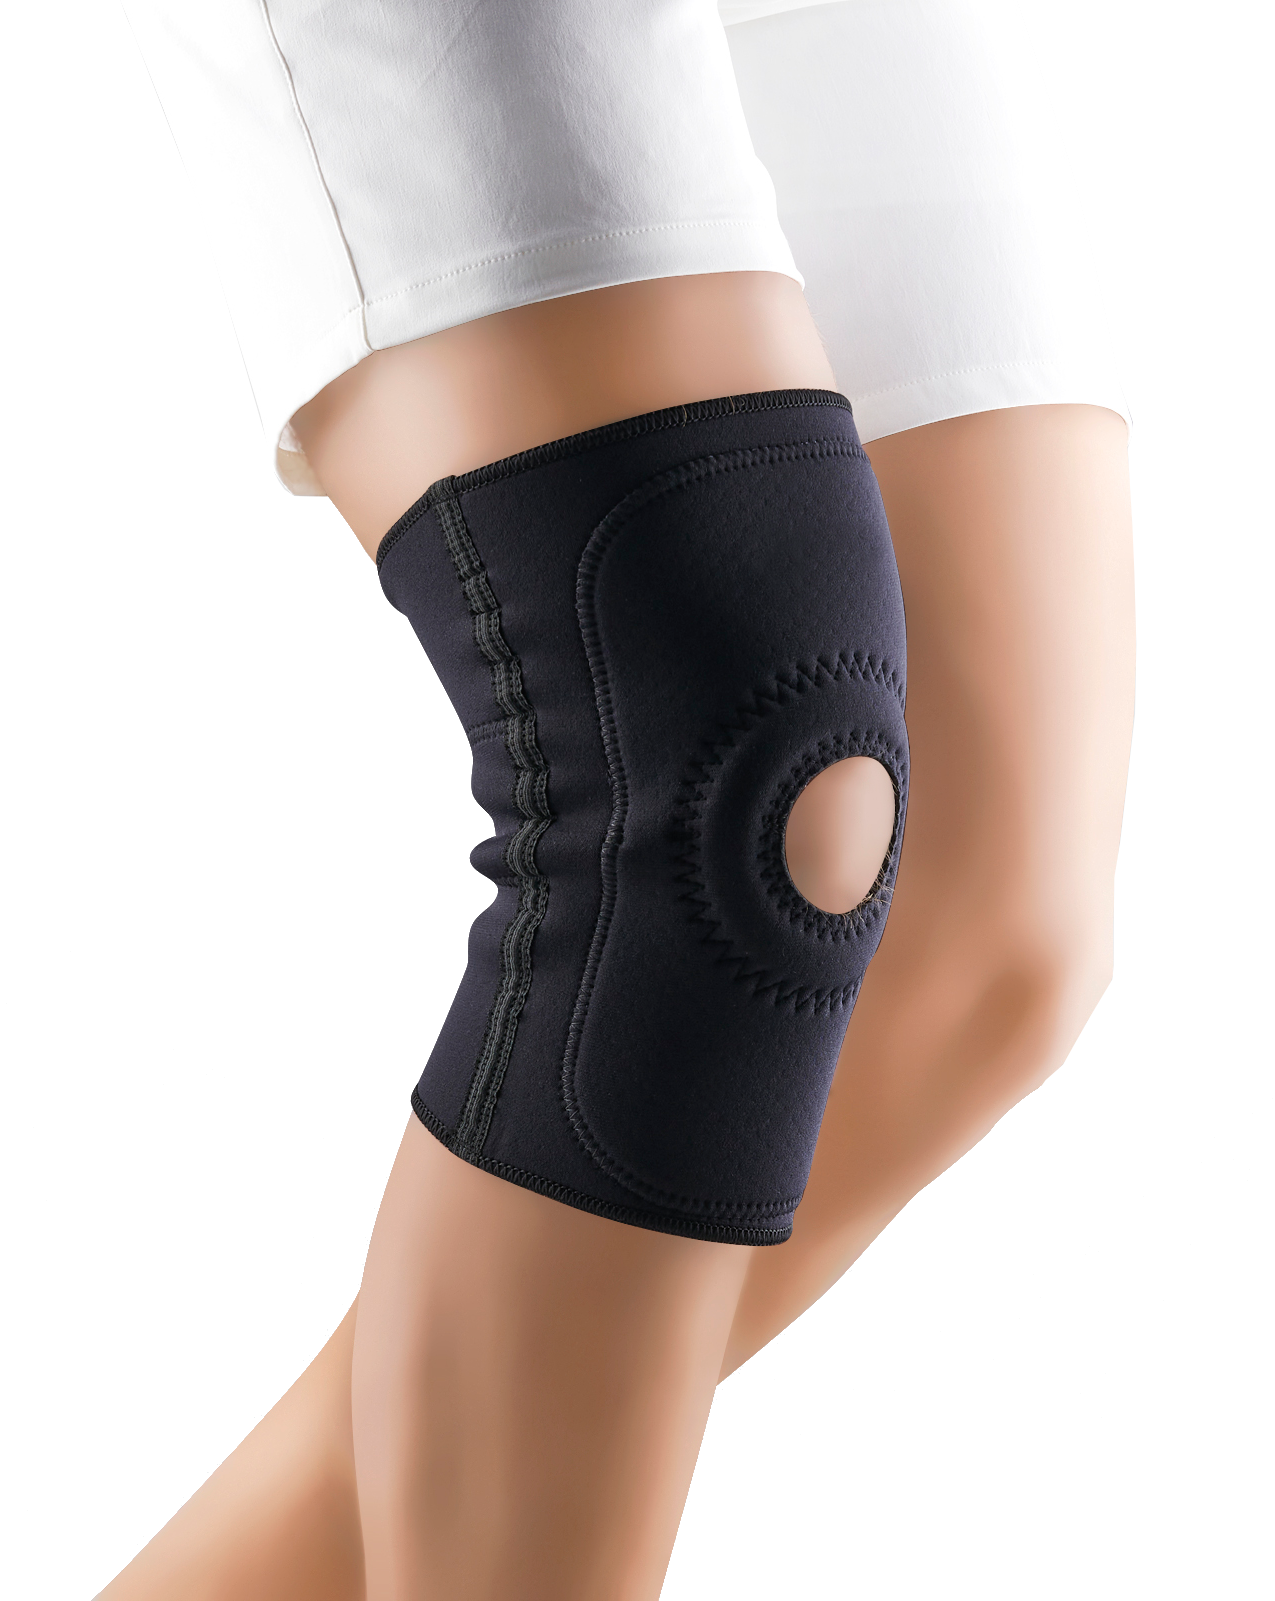 TONUS ELAST 0310 Size 1, Black elastic ankle support bandage, 1